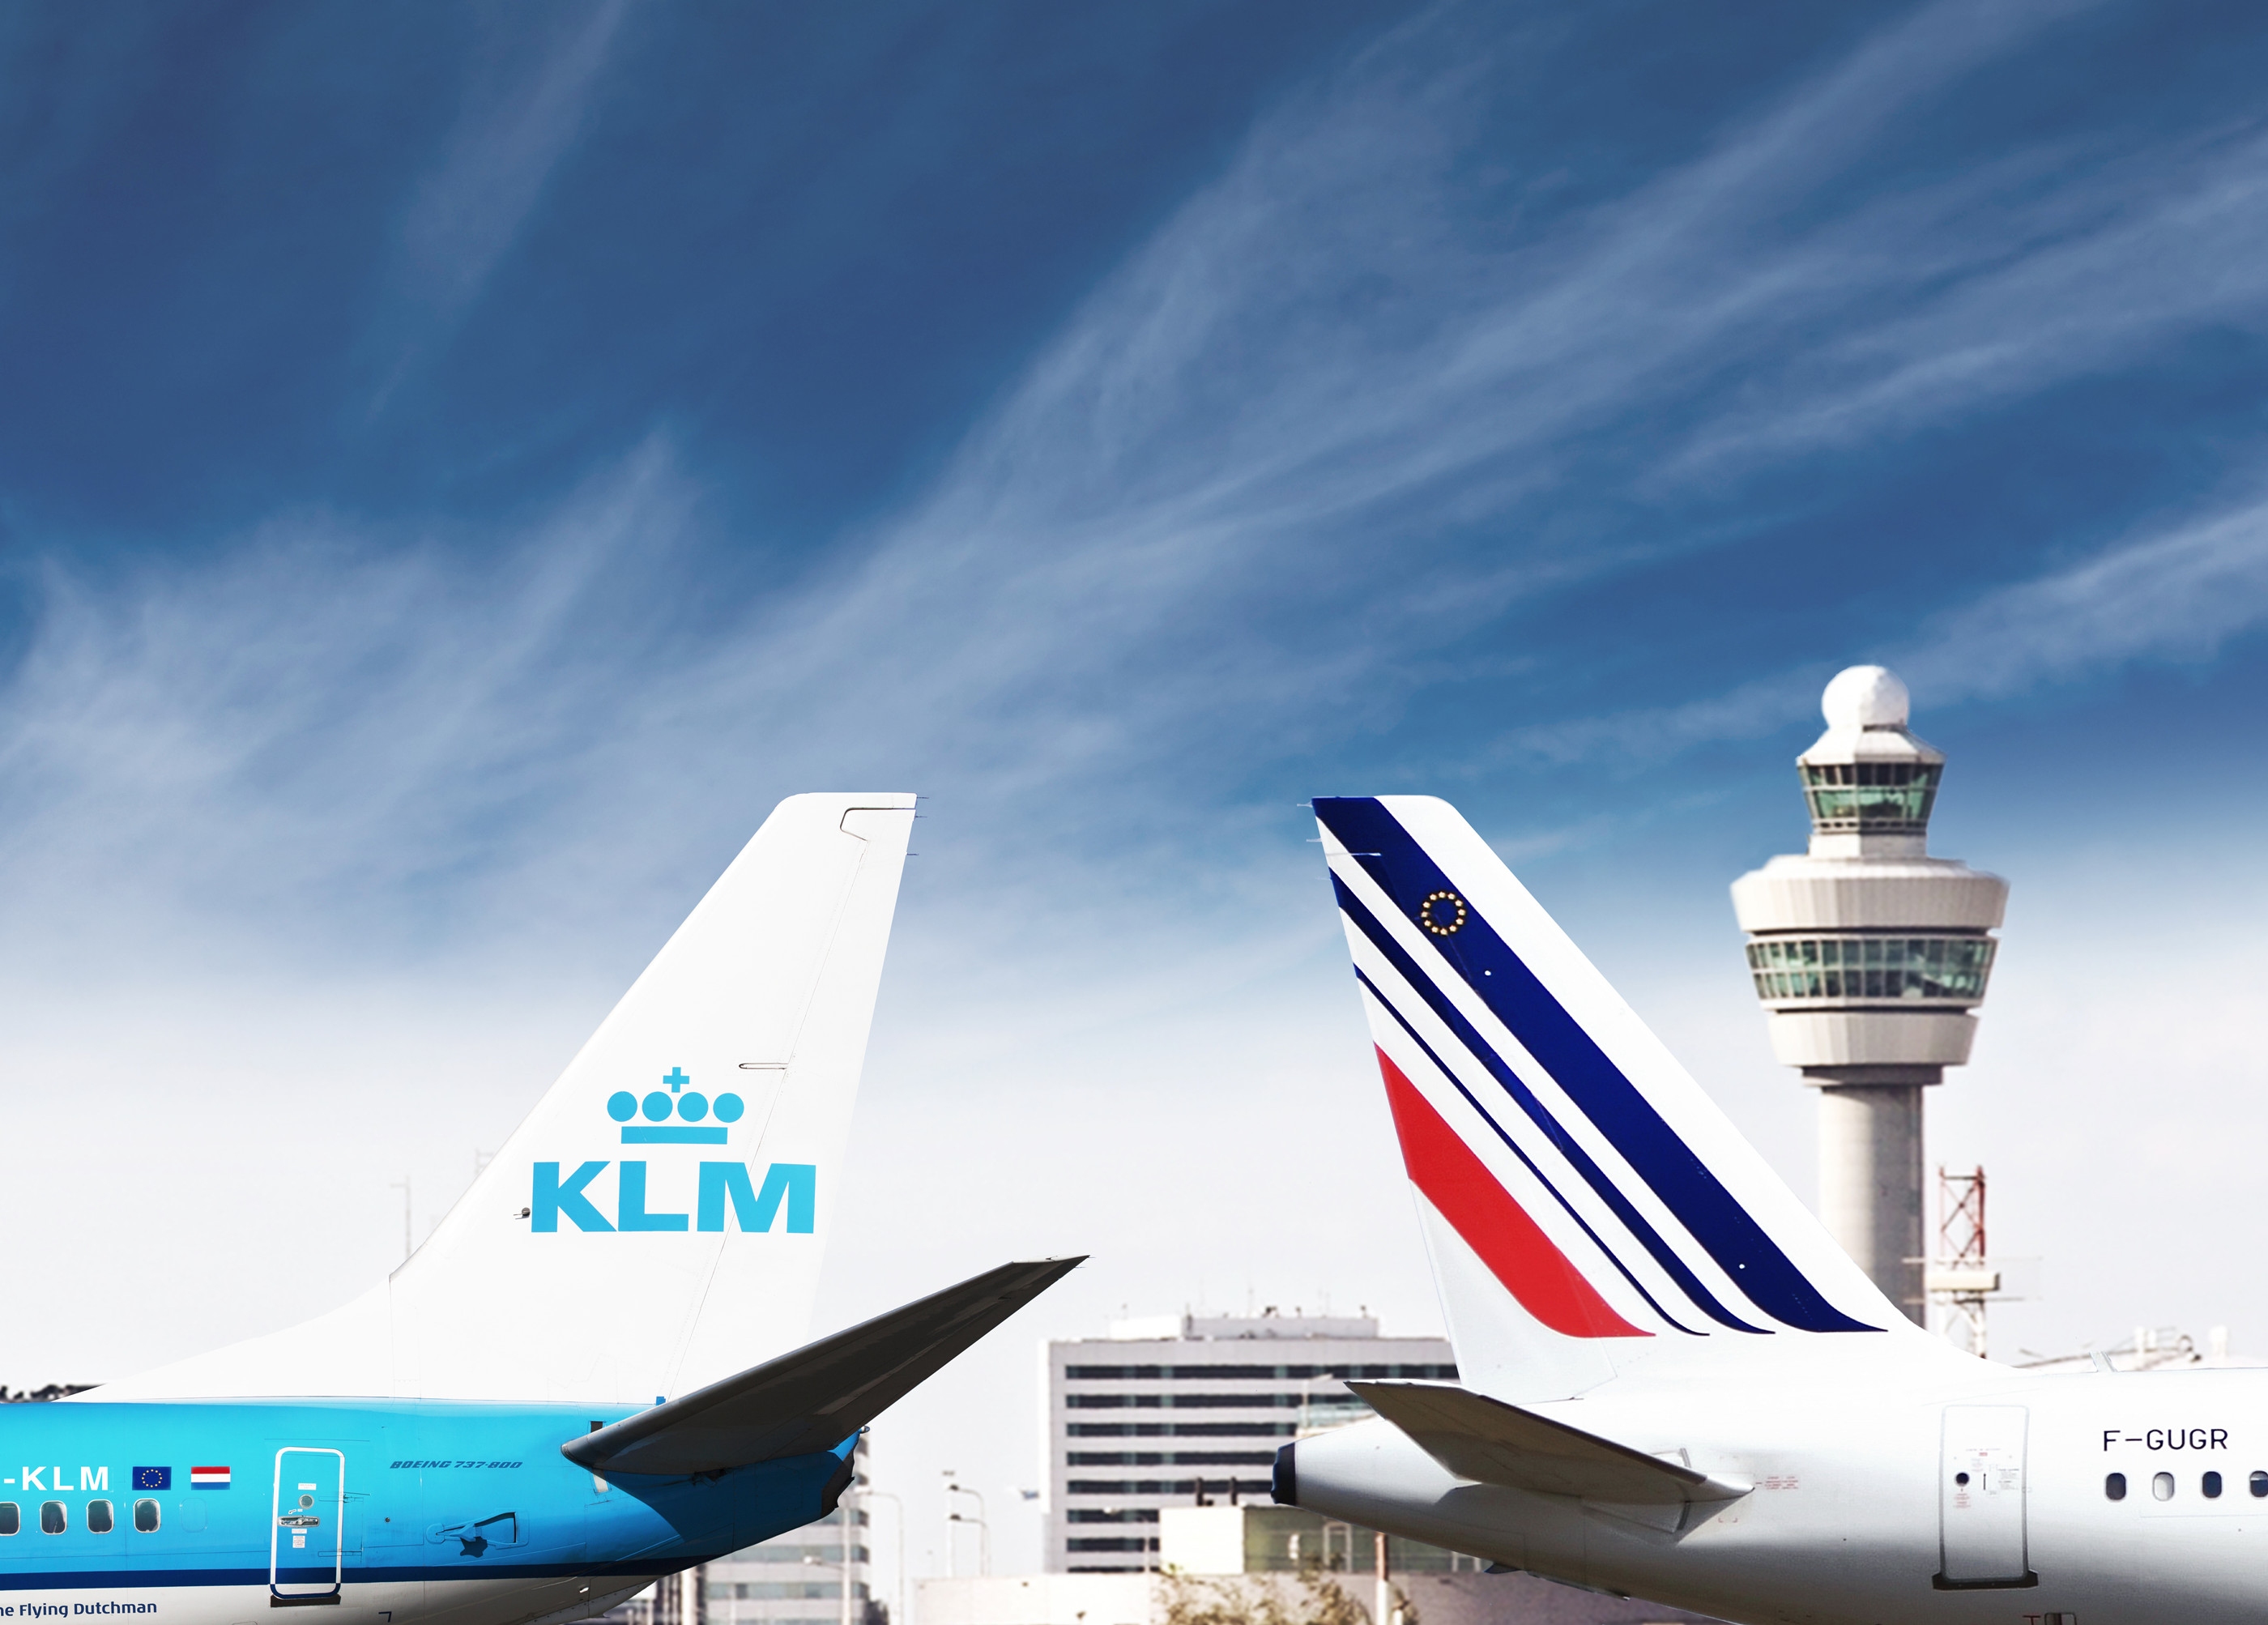 2020年3月31日之前通过法航荷航全球网络预订的机票均可改签